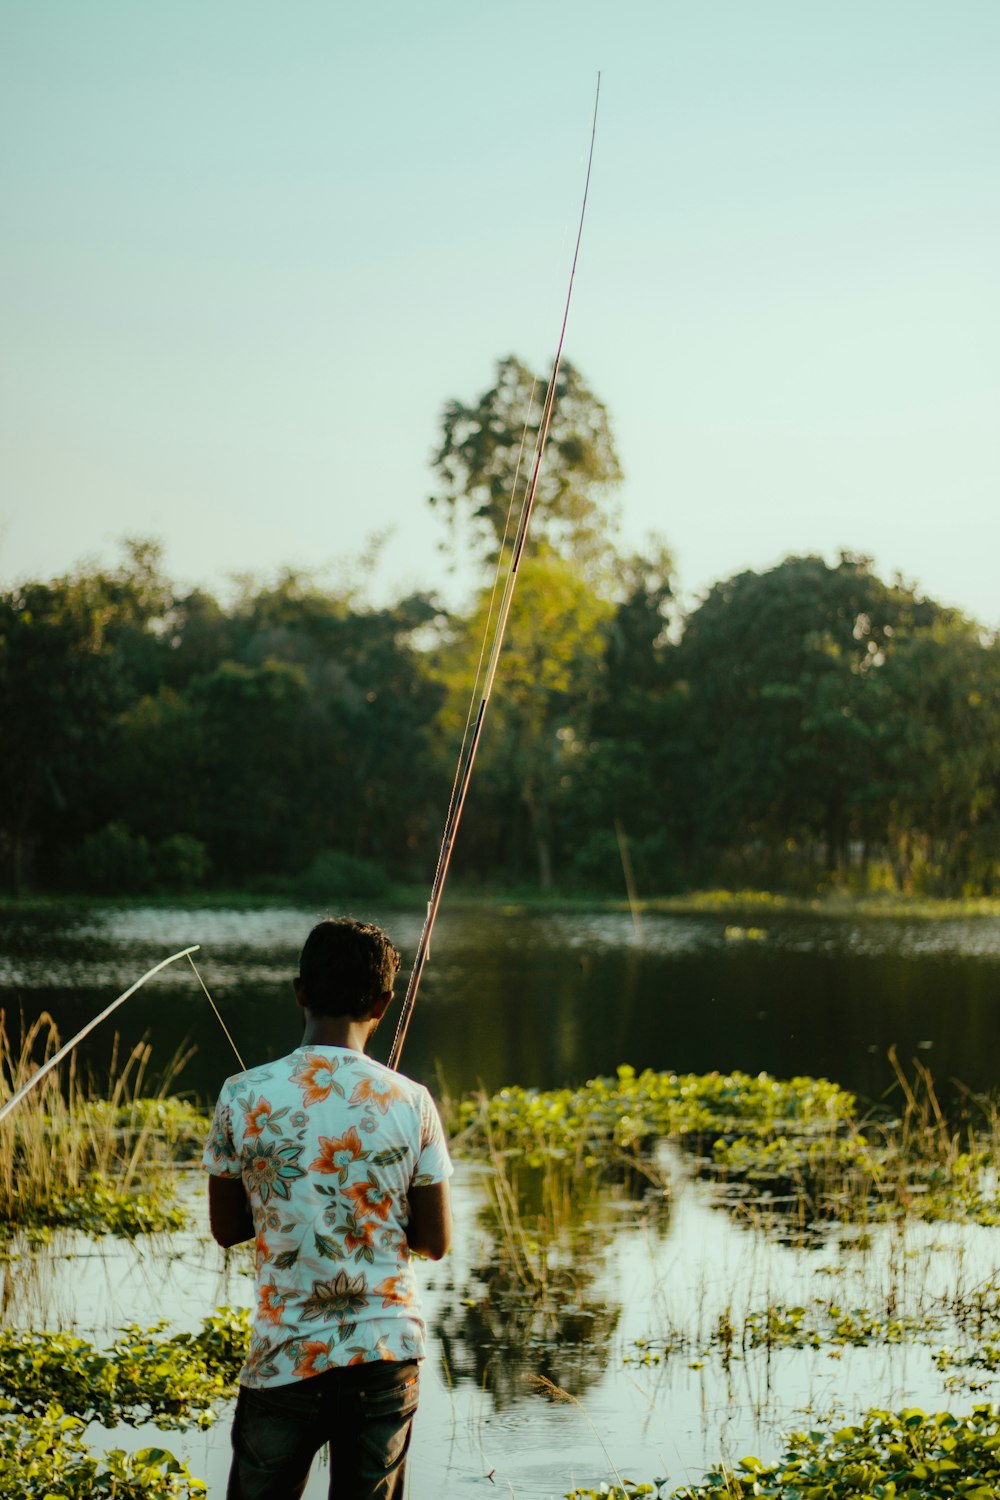 man in white shirt fishing on lake during daytime